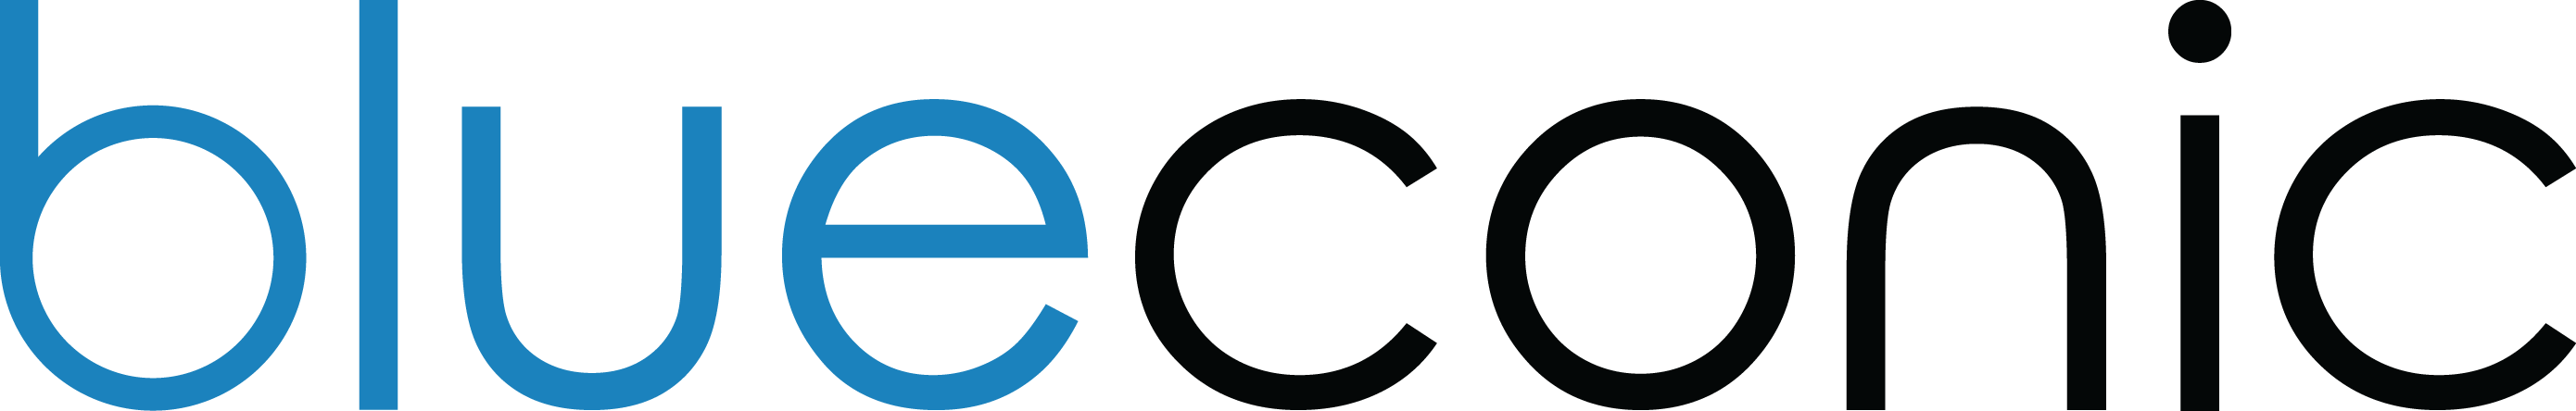 BlueConic_logo